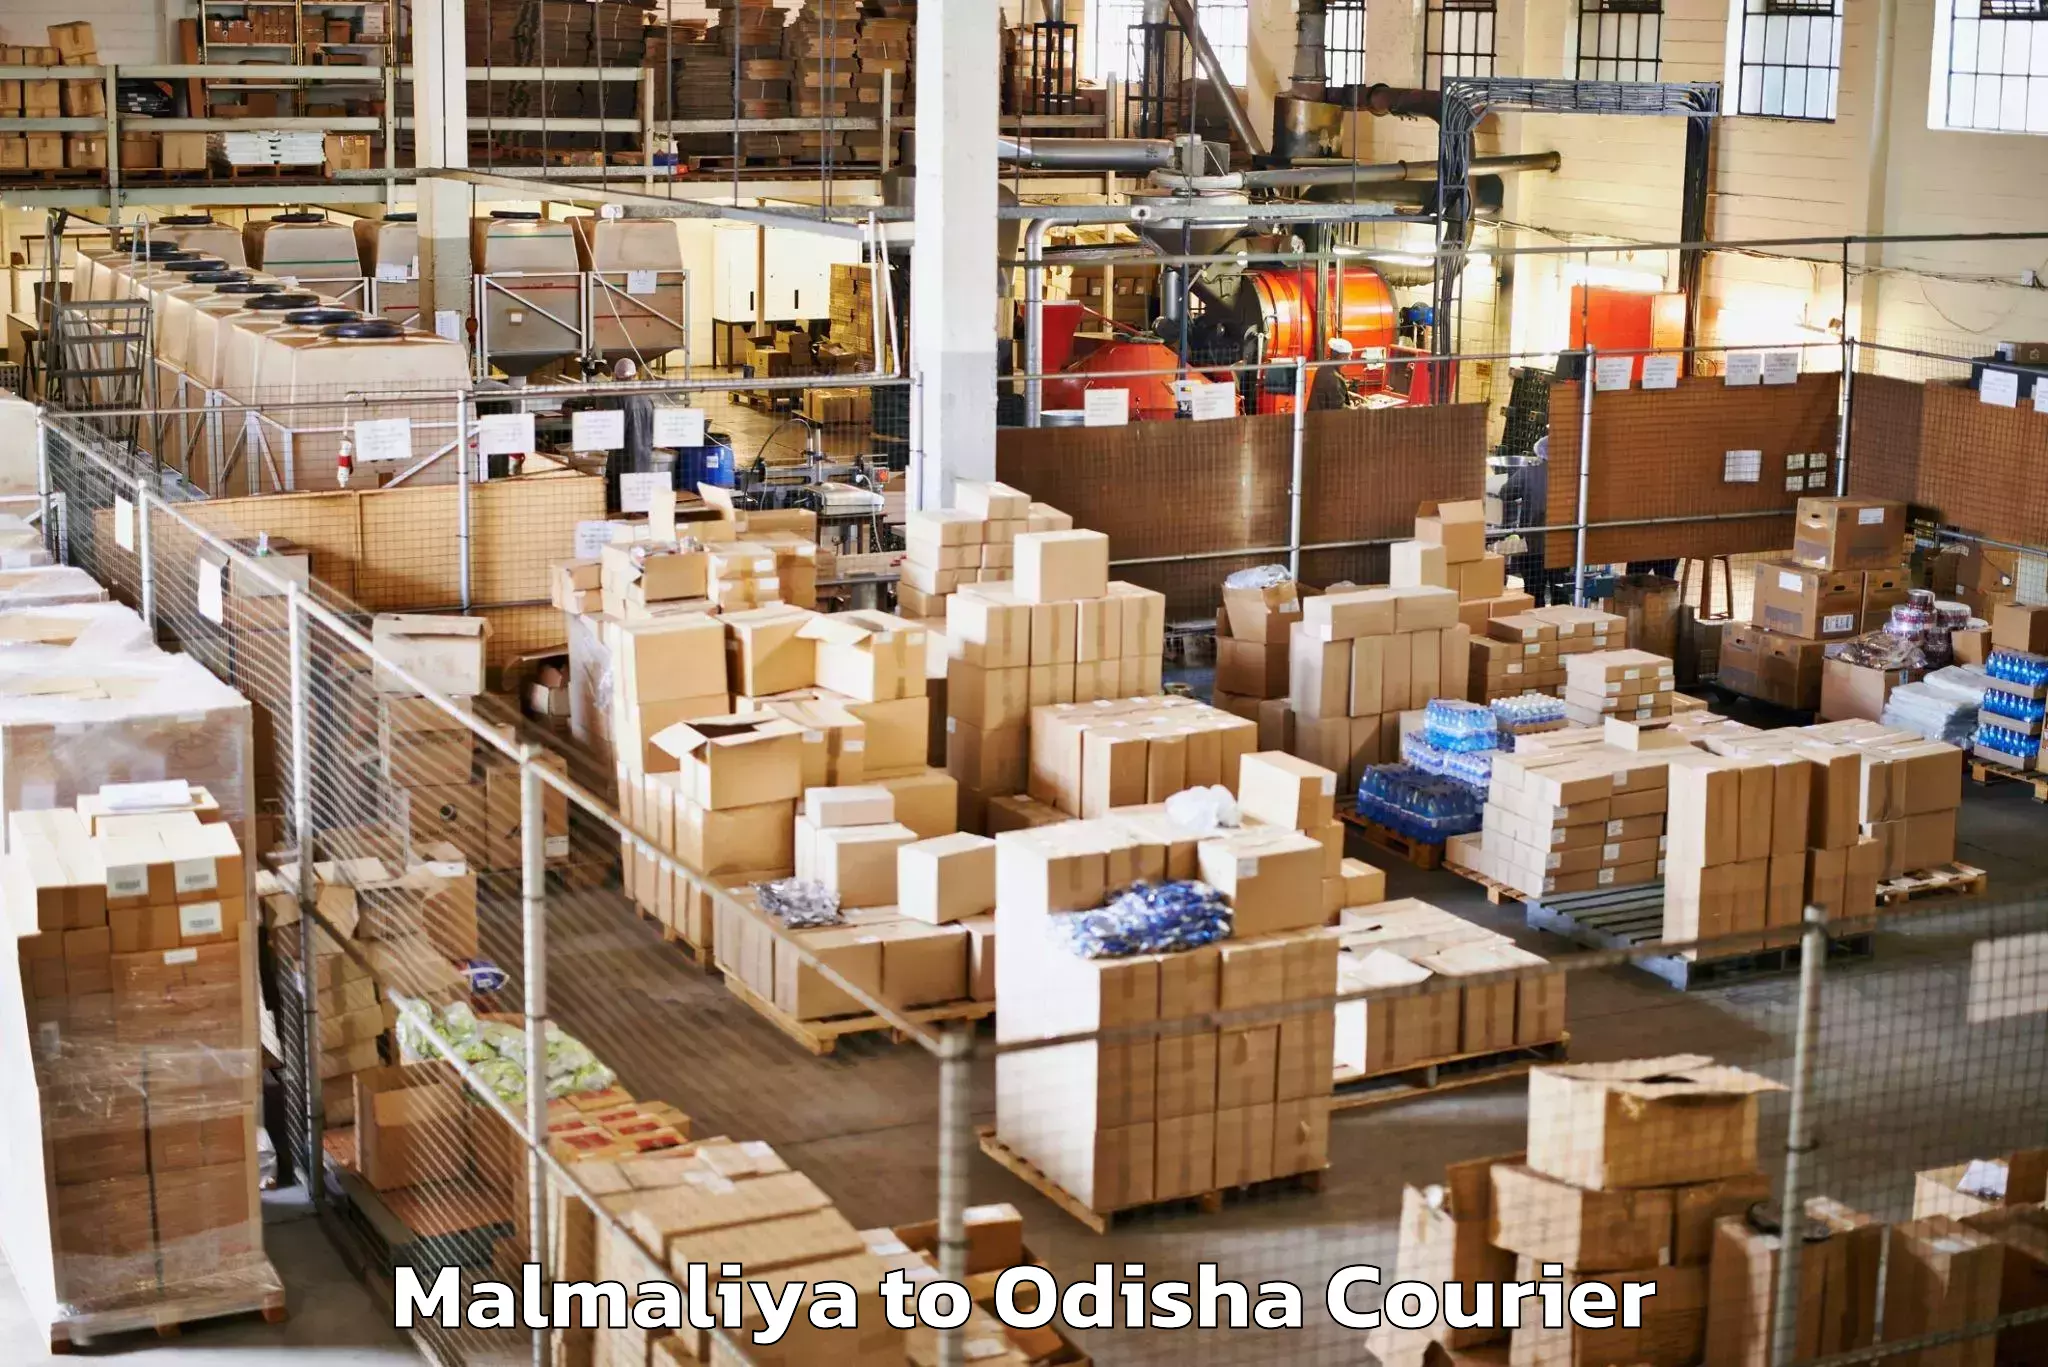 Baggage shipping experience Malmaliya to Odisha